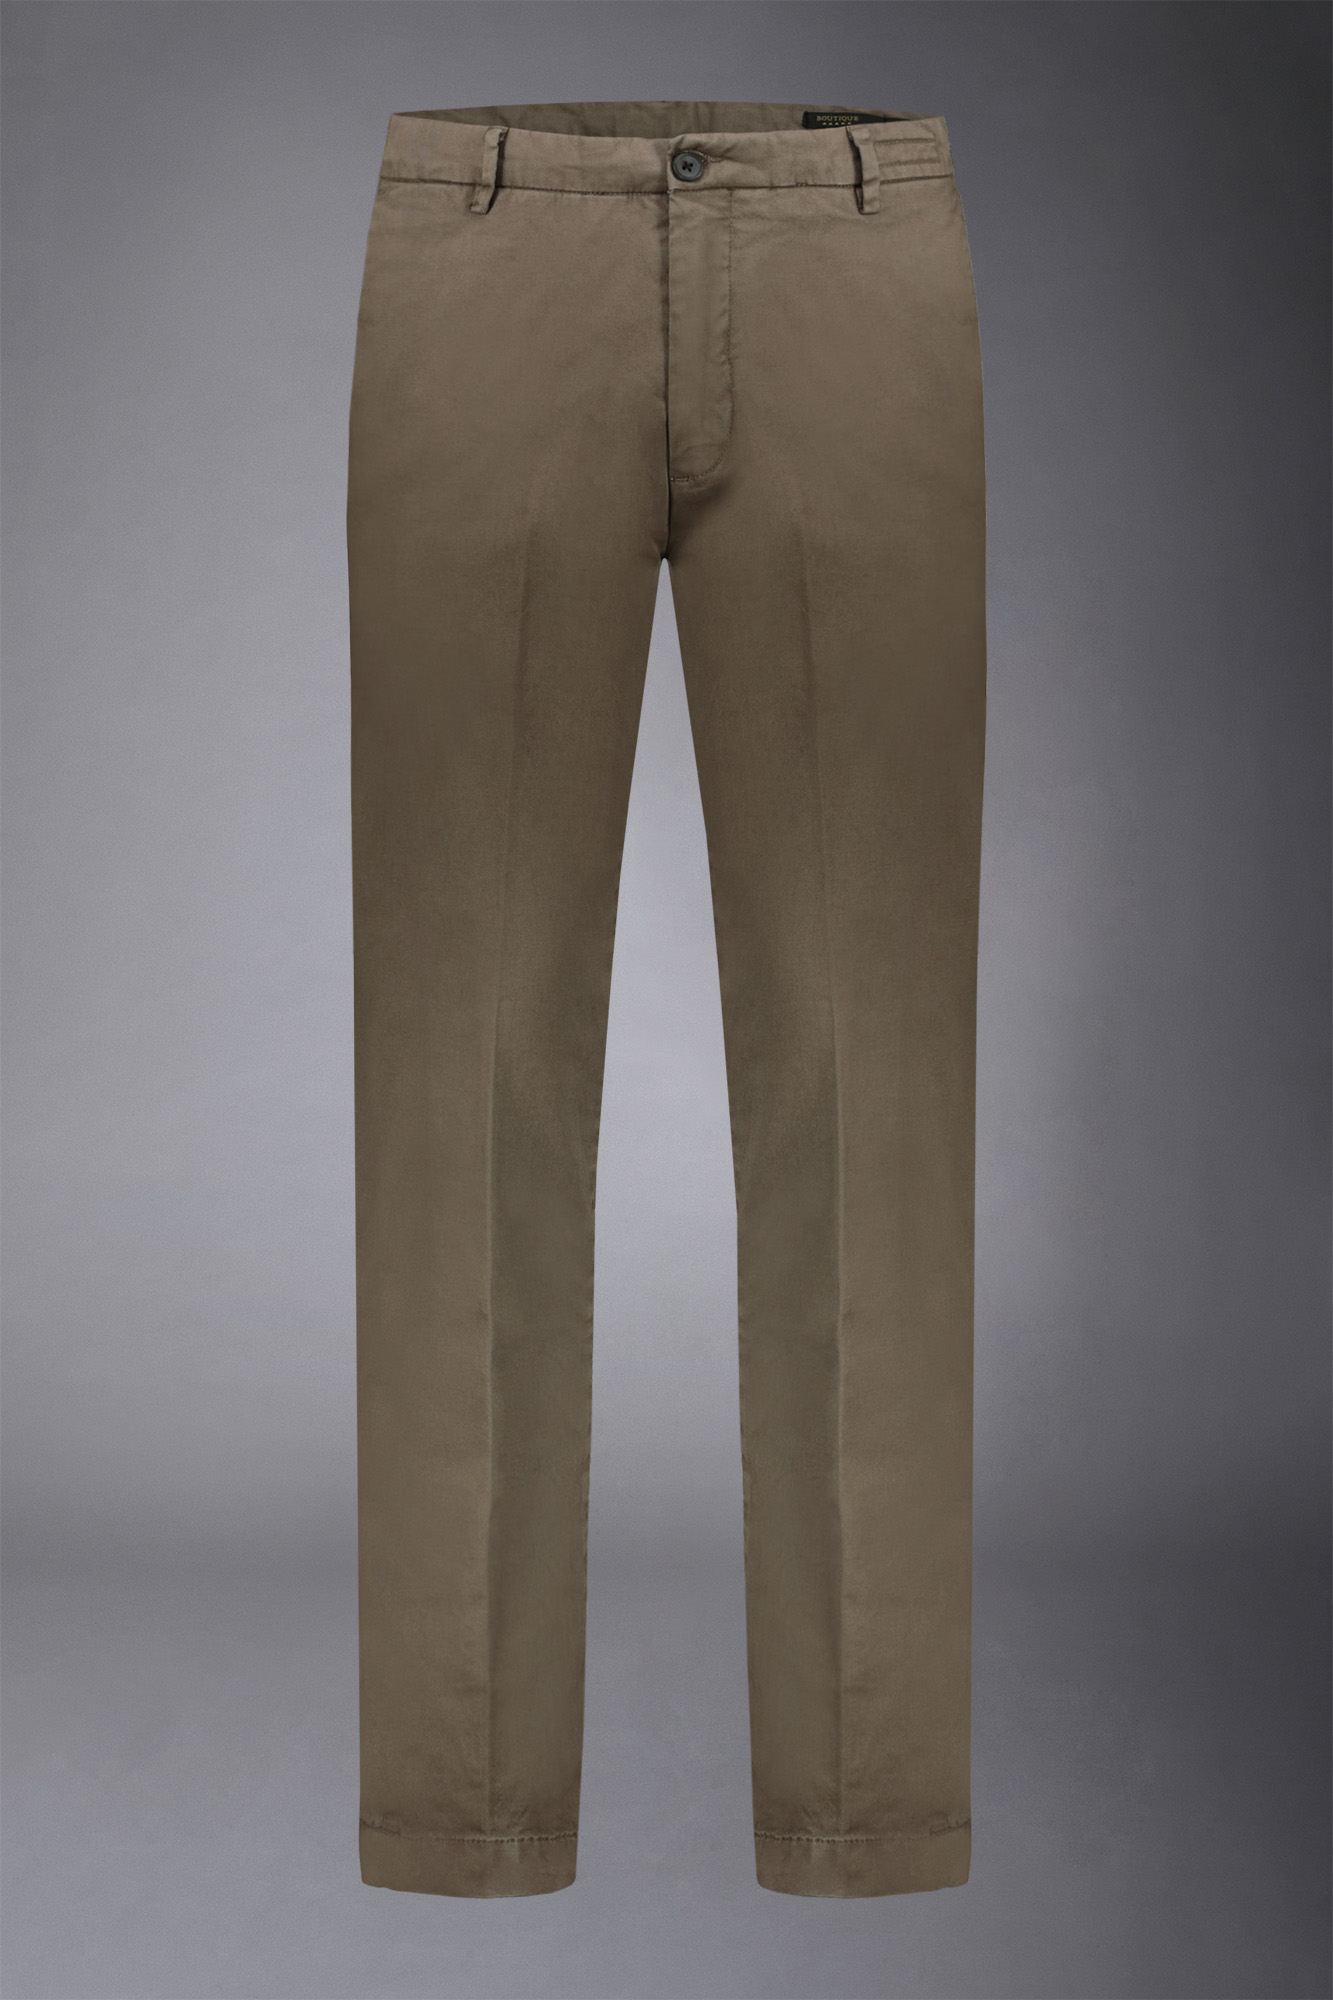 Pantalone chino uomo classico regular fit tessuto twill elasticizzato image number null